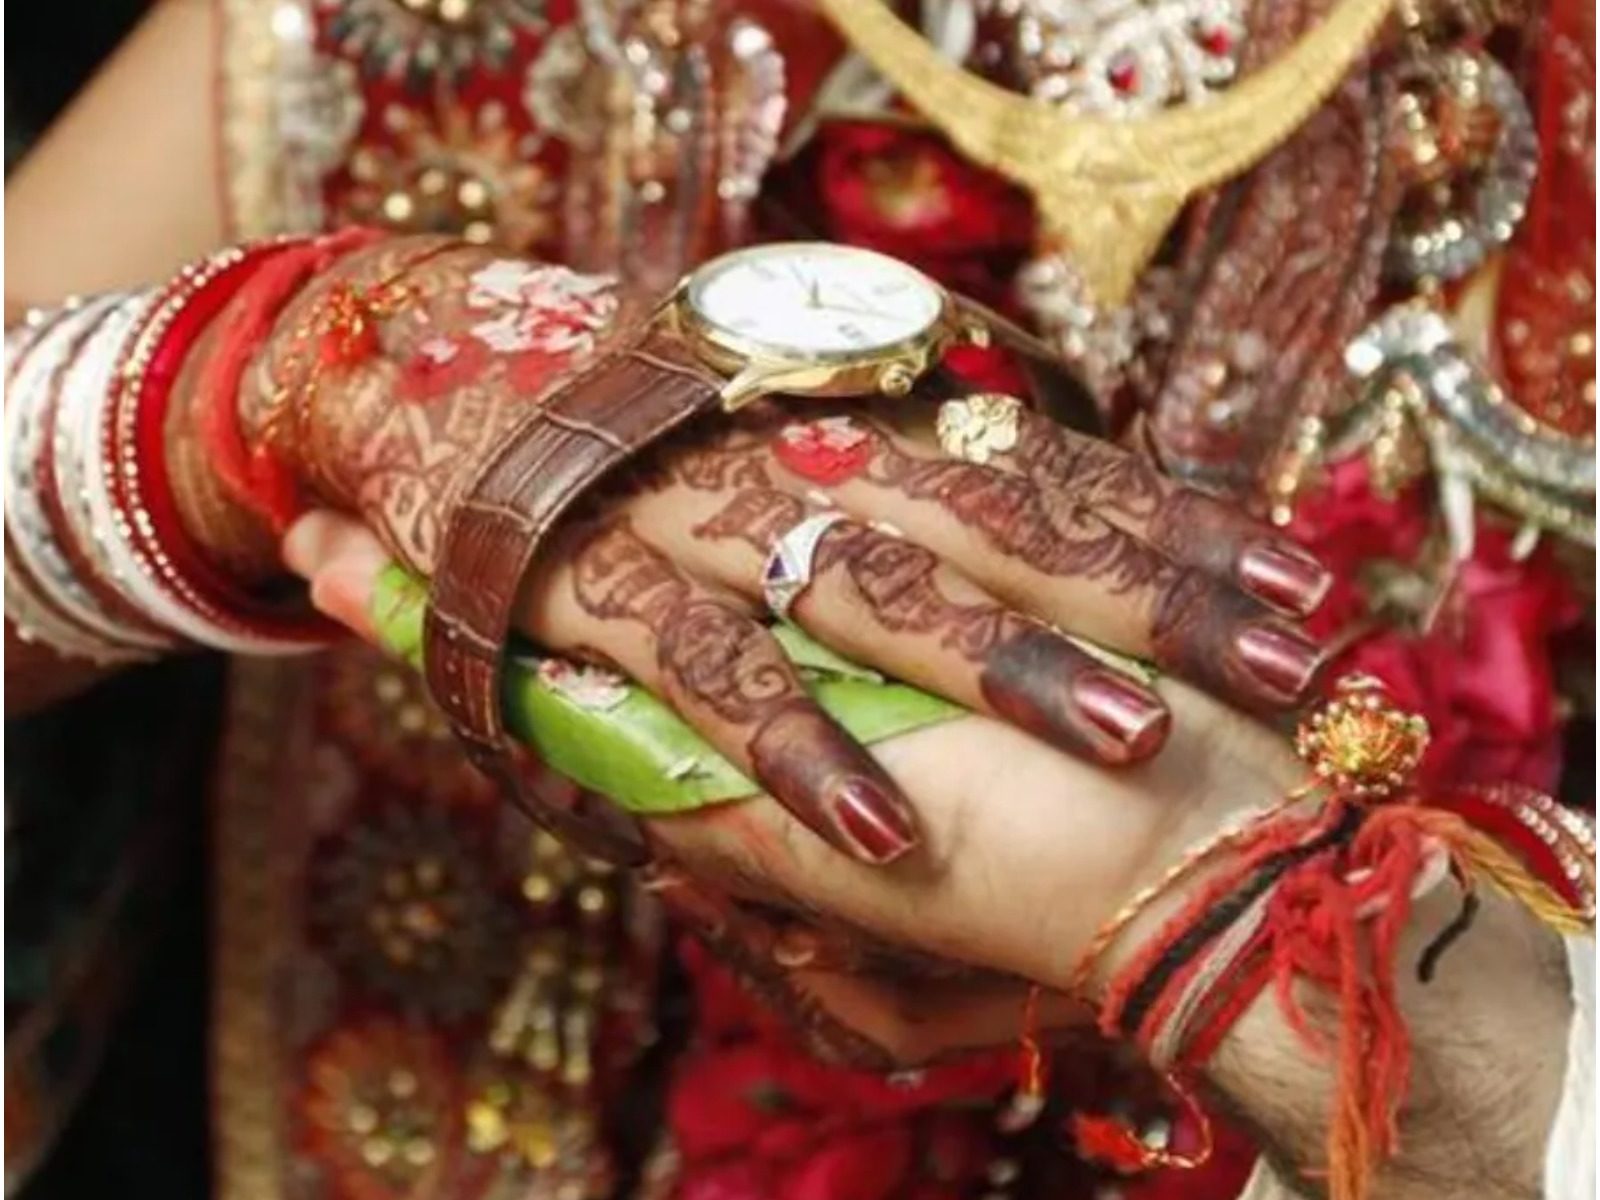 खाप महापंचायत में सरकार से एक गांव और एक गोत्र में शादी पर कानूनी रोक लगाने की मांग की गयी है. 